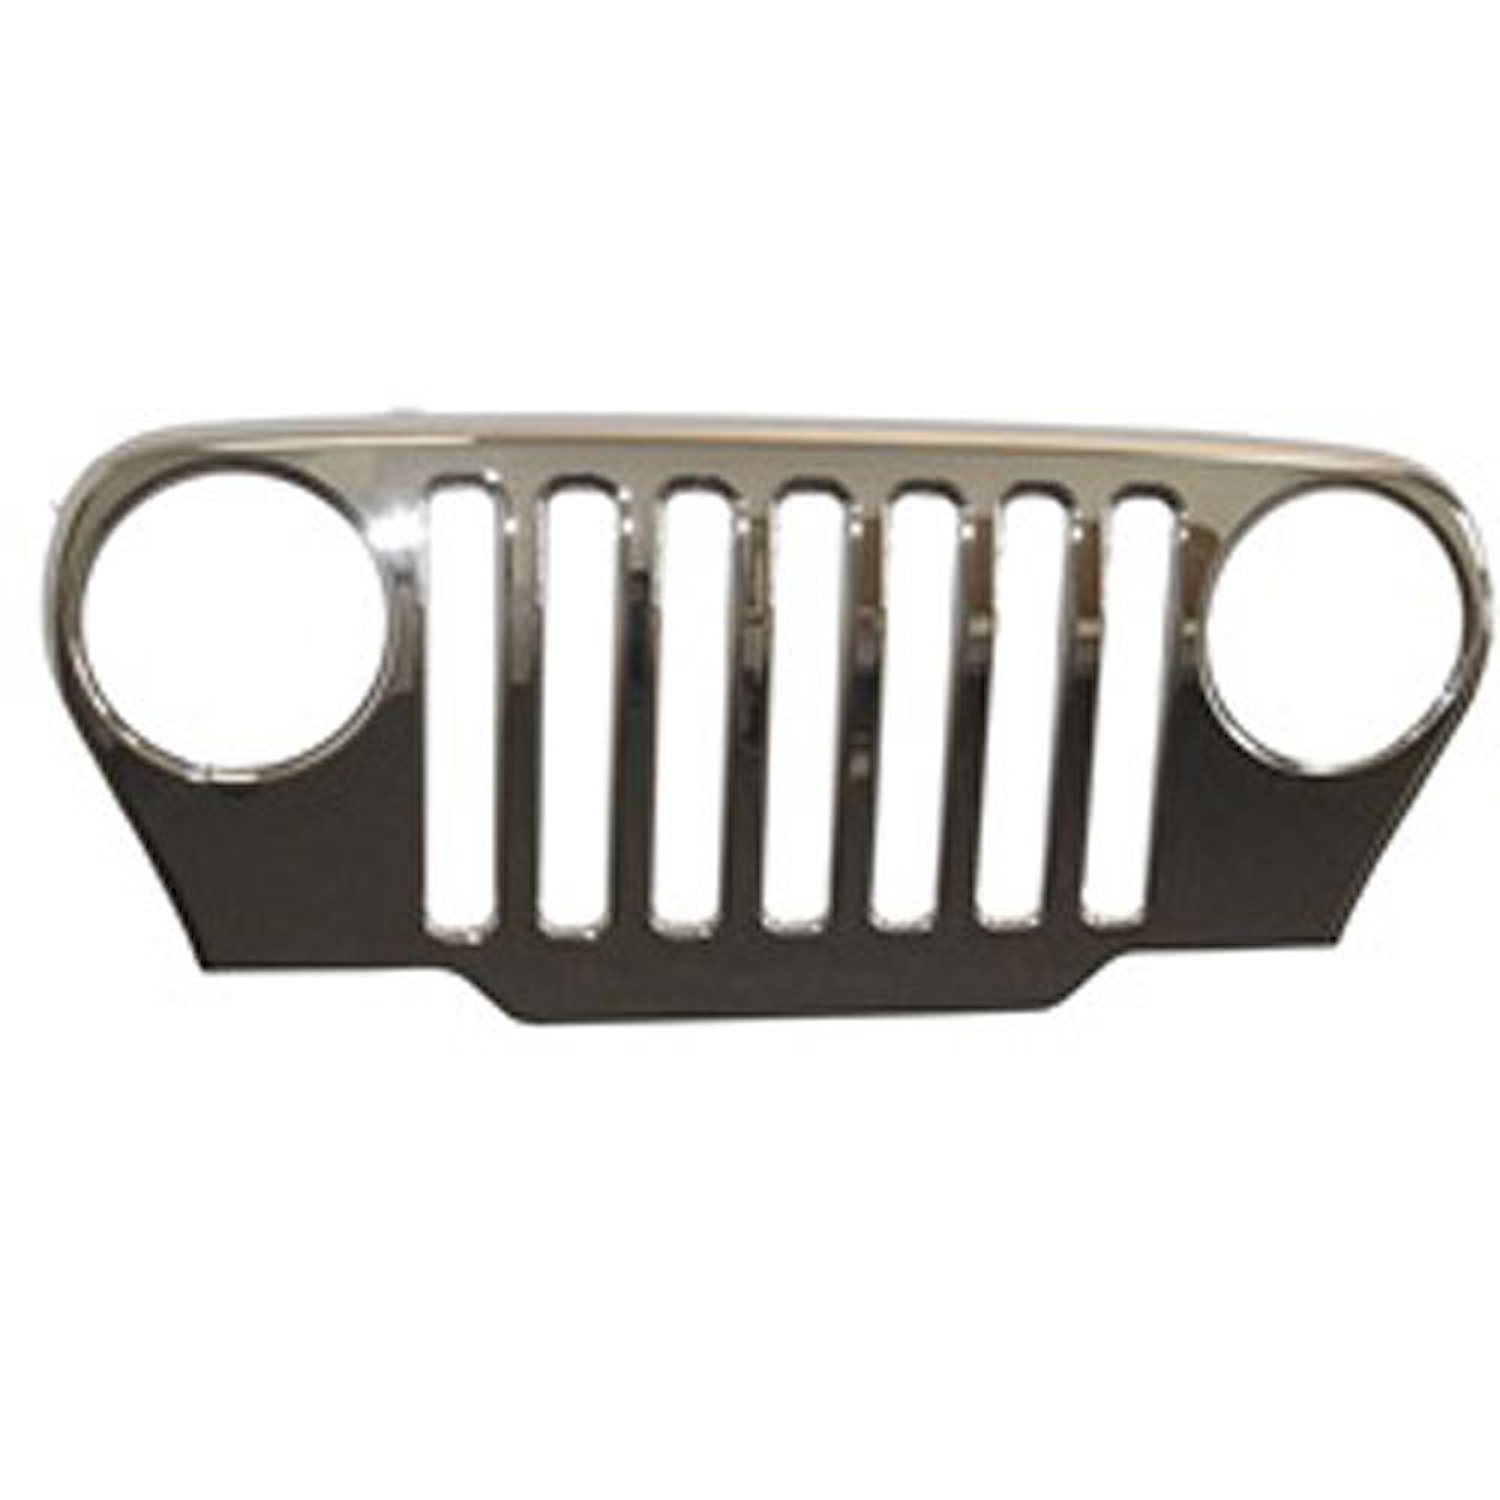 This Mopar licensed chrome grille overlay from Omix-ADA fits 07-16 Jeep 2-door and 4-door JK Wrangler.